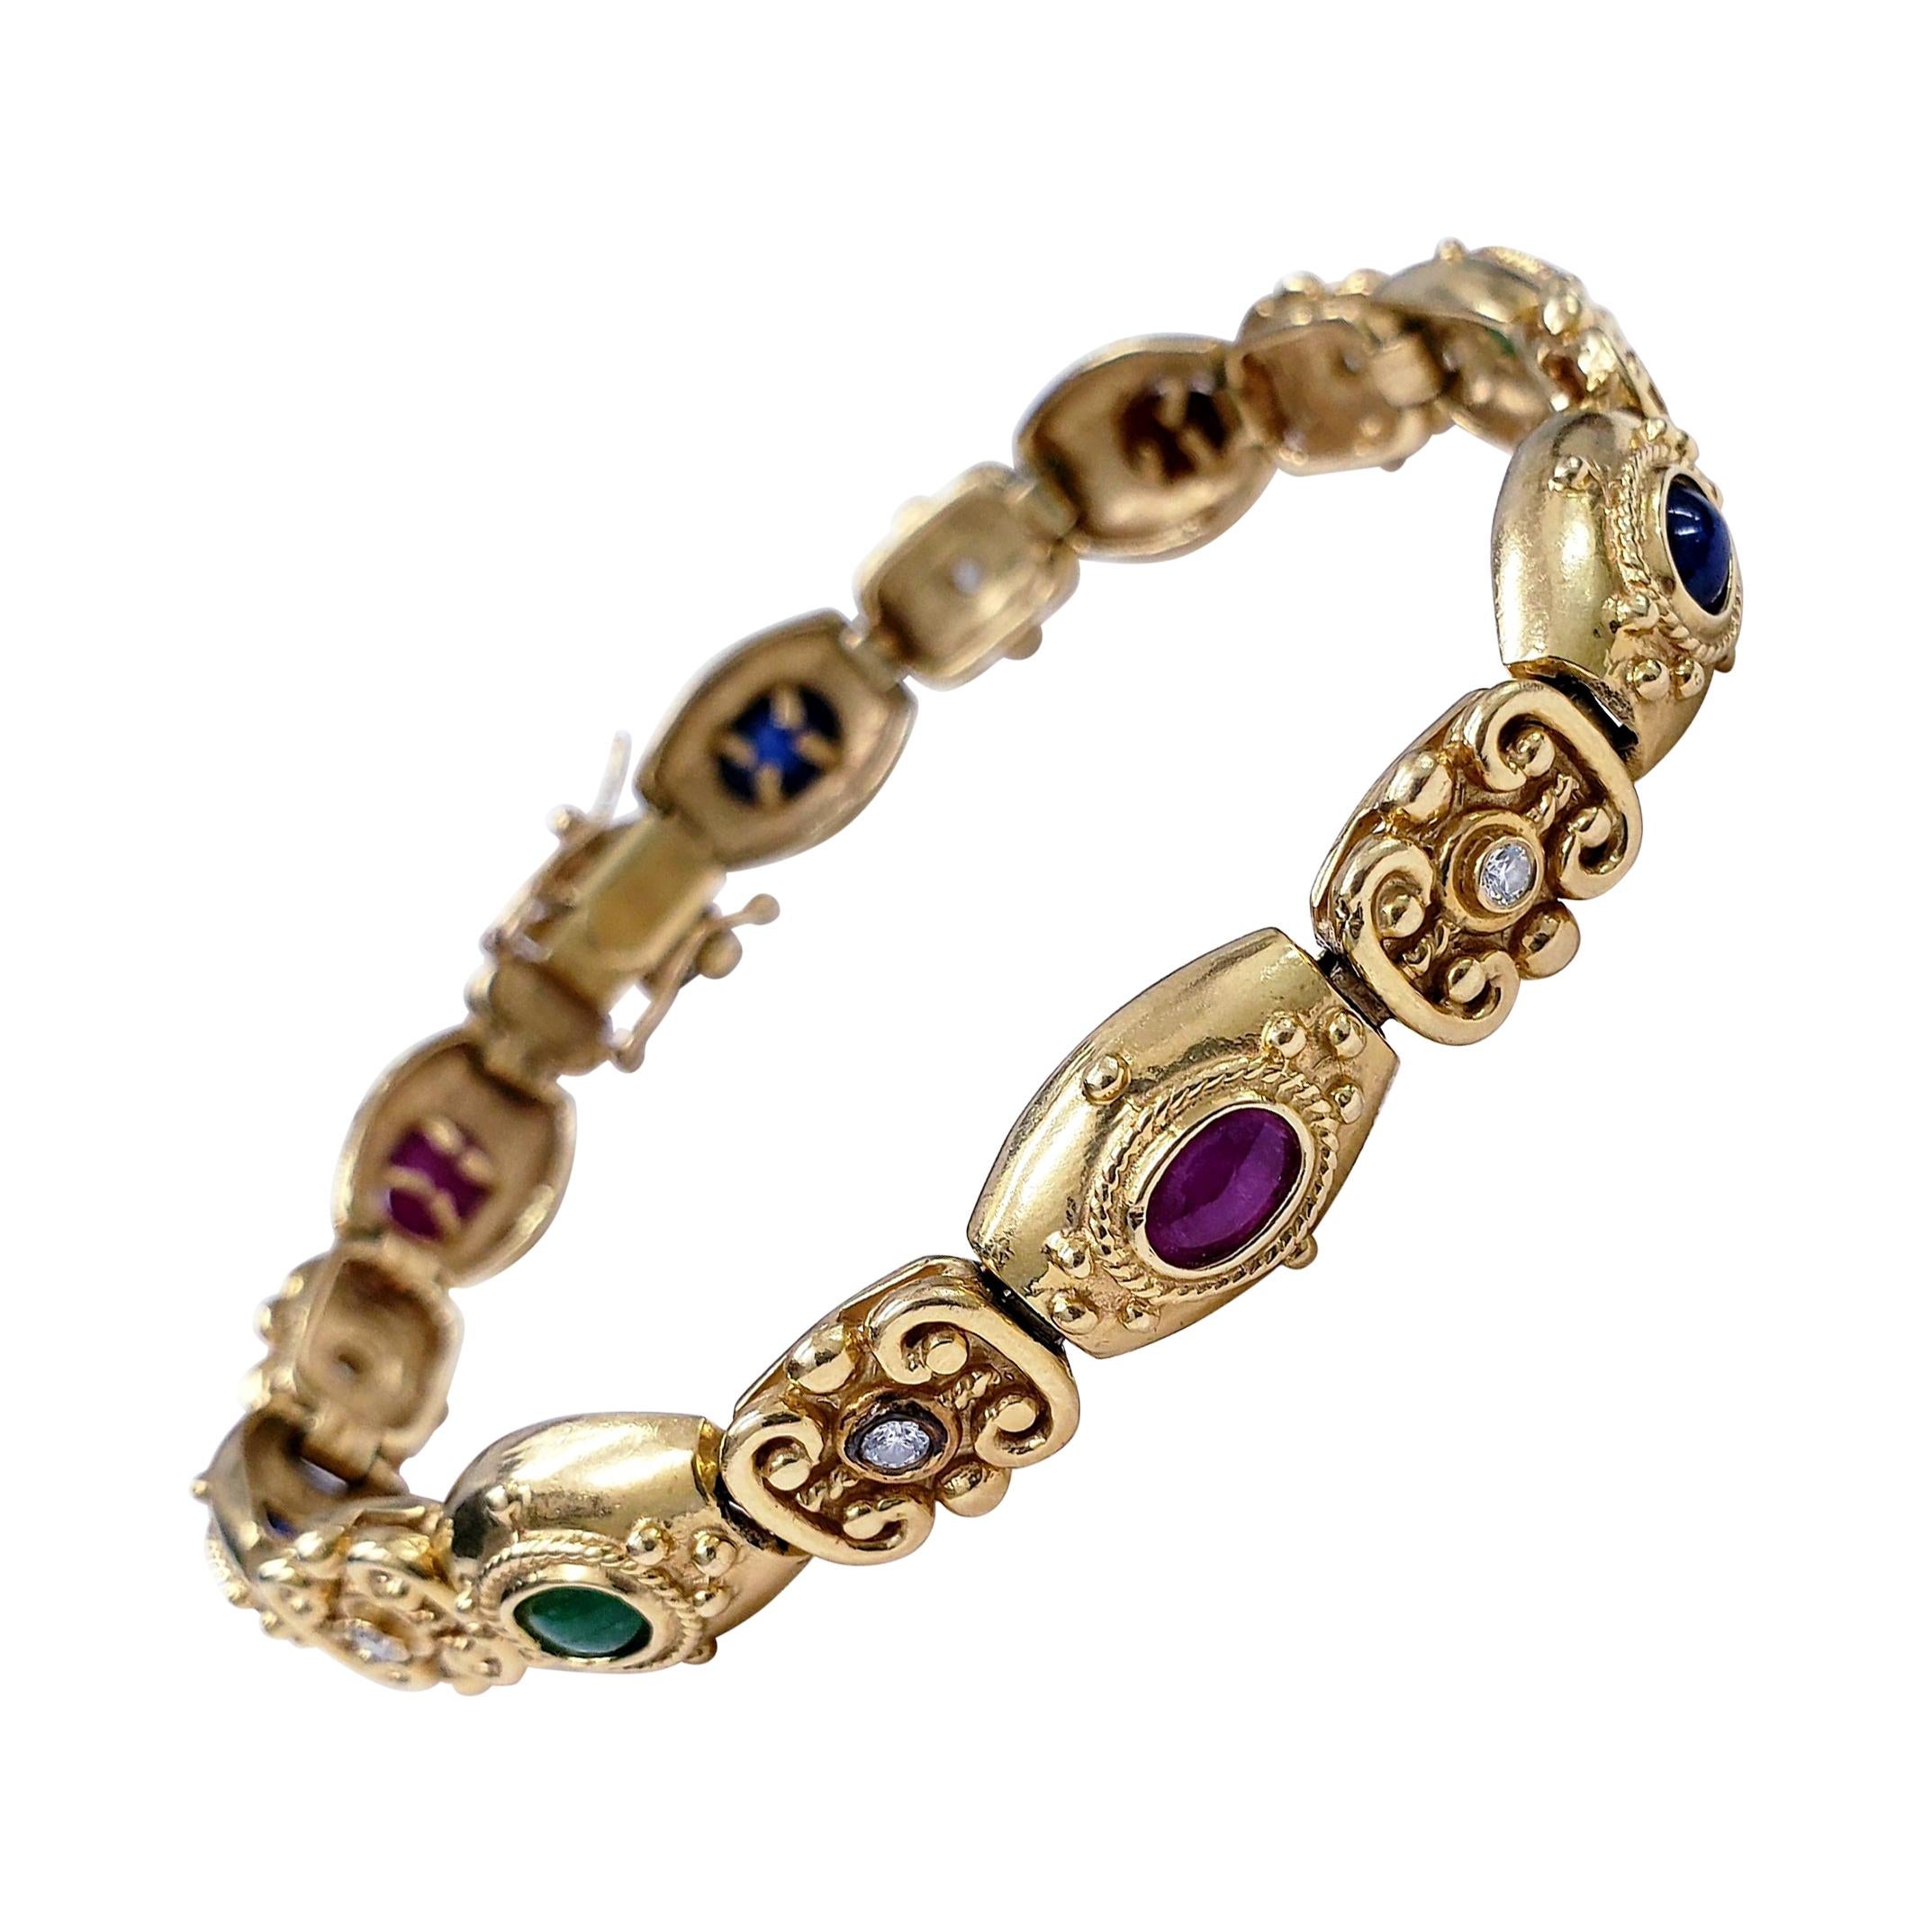 Frühviktorianisches Armband mit Rubinen, Smaragden und blauen Saphiren, Cabochons und Diamanten